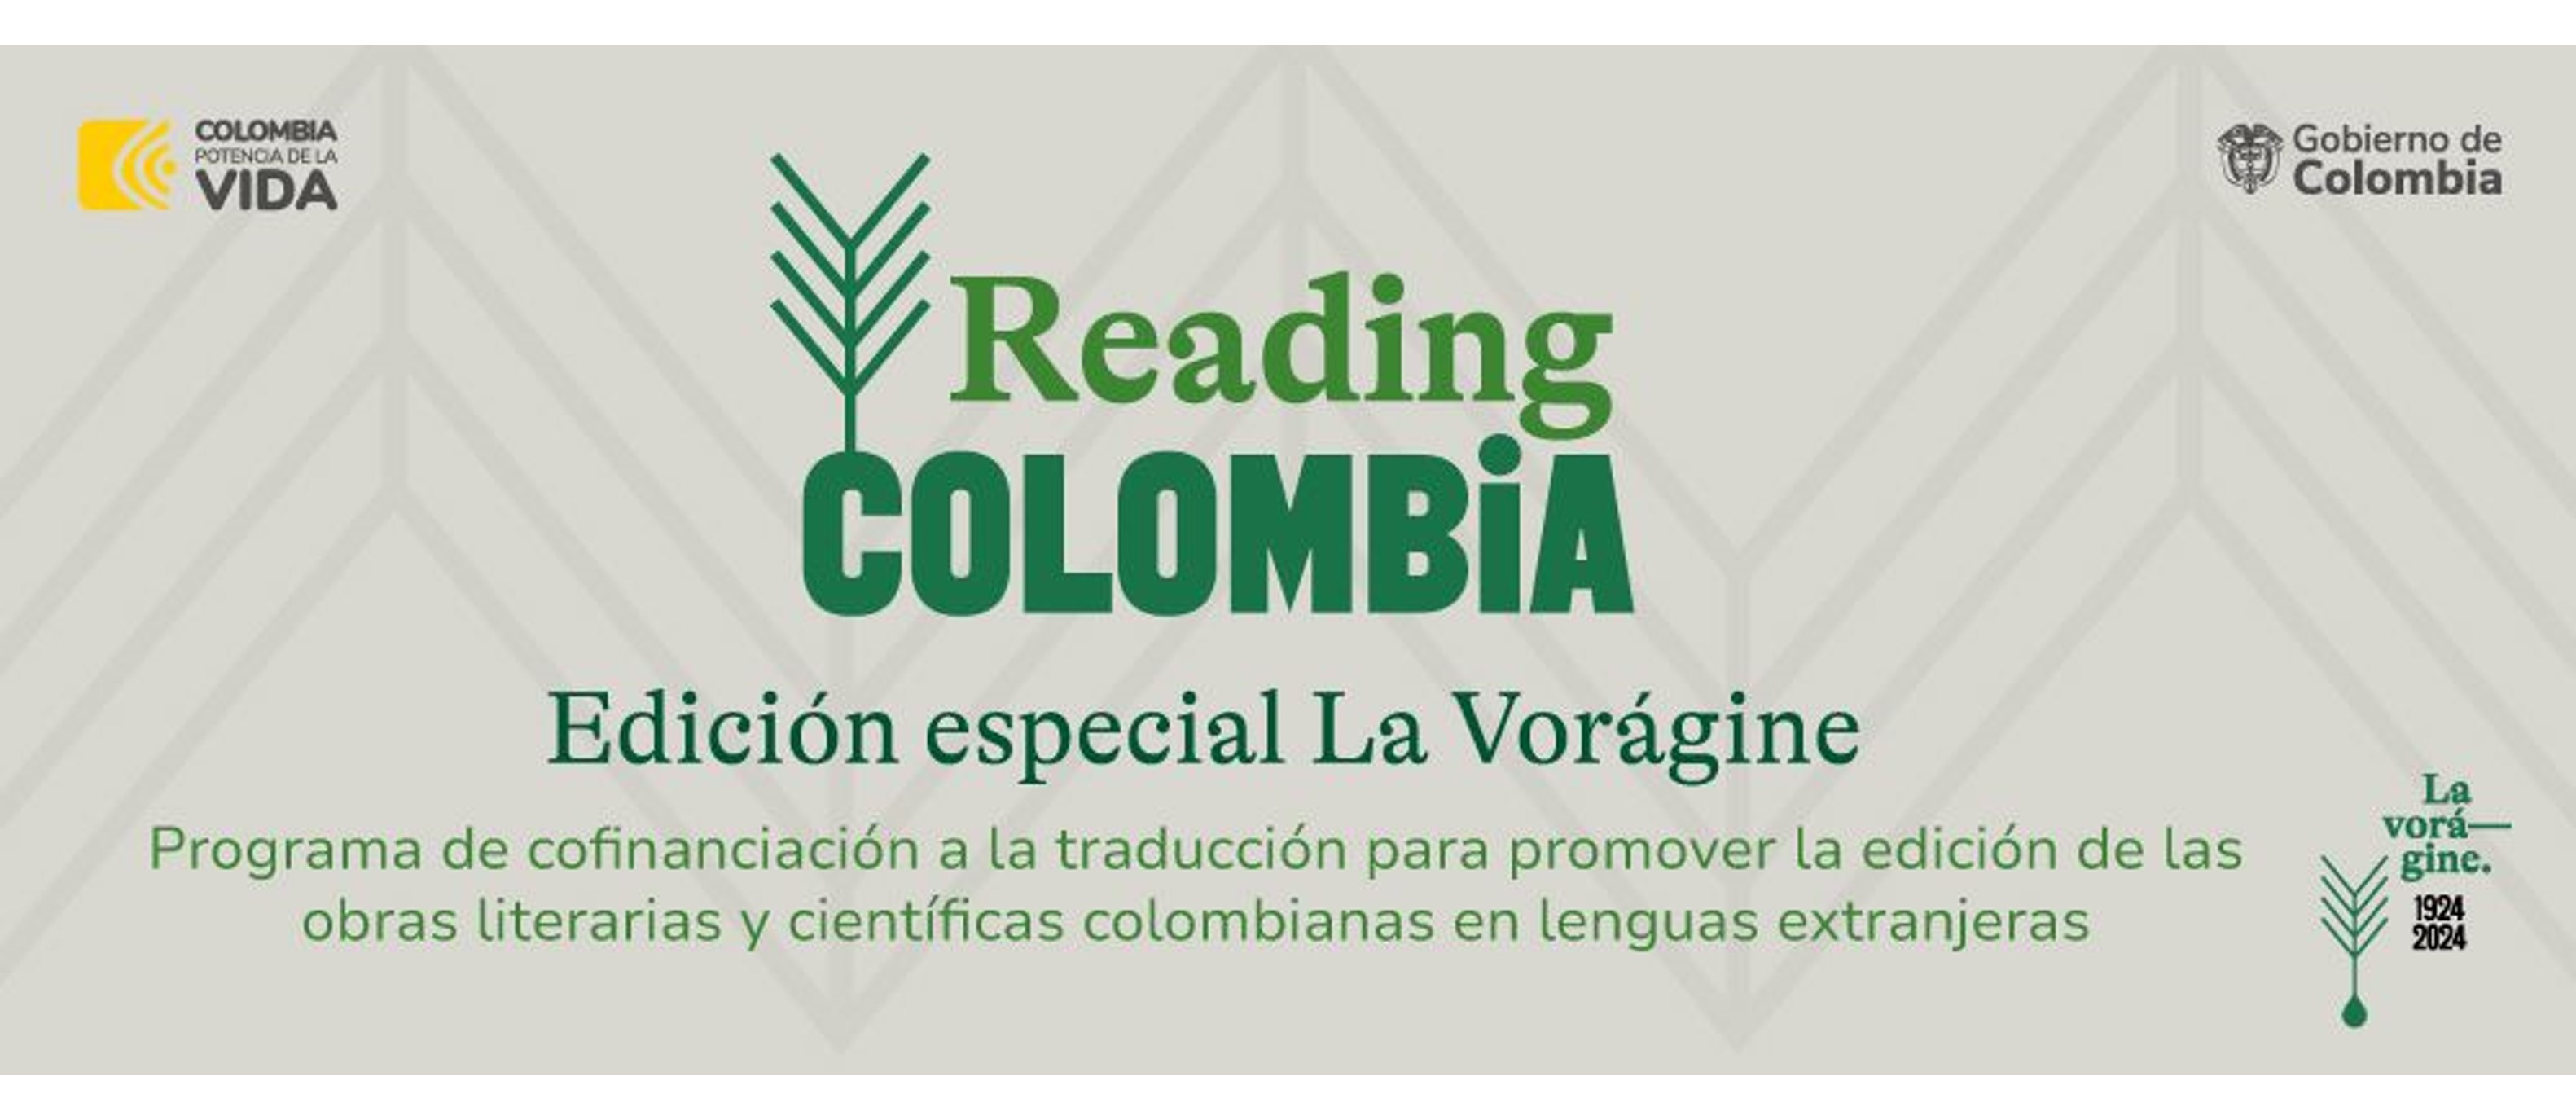 Se abre la convocatoria para participar en la edición especial de la convocatoria ‘Reading Colombia. Centenario Vorágine’ 